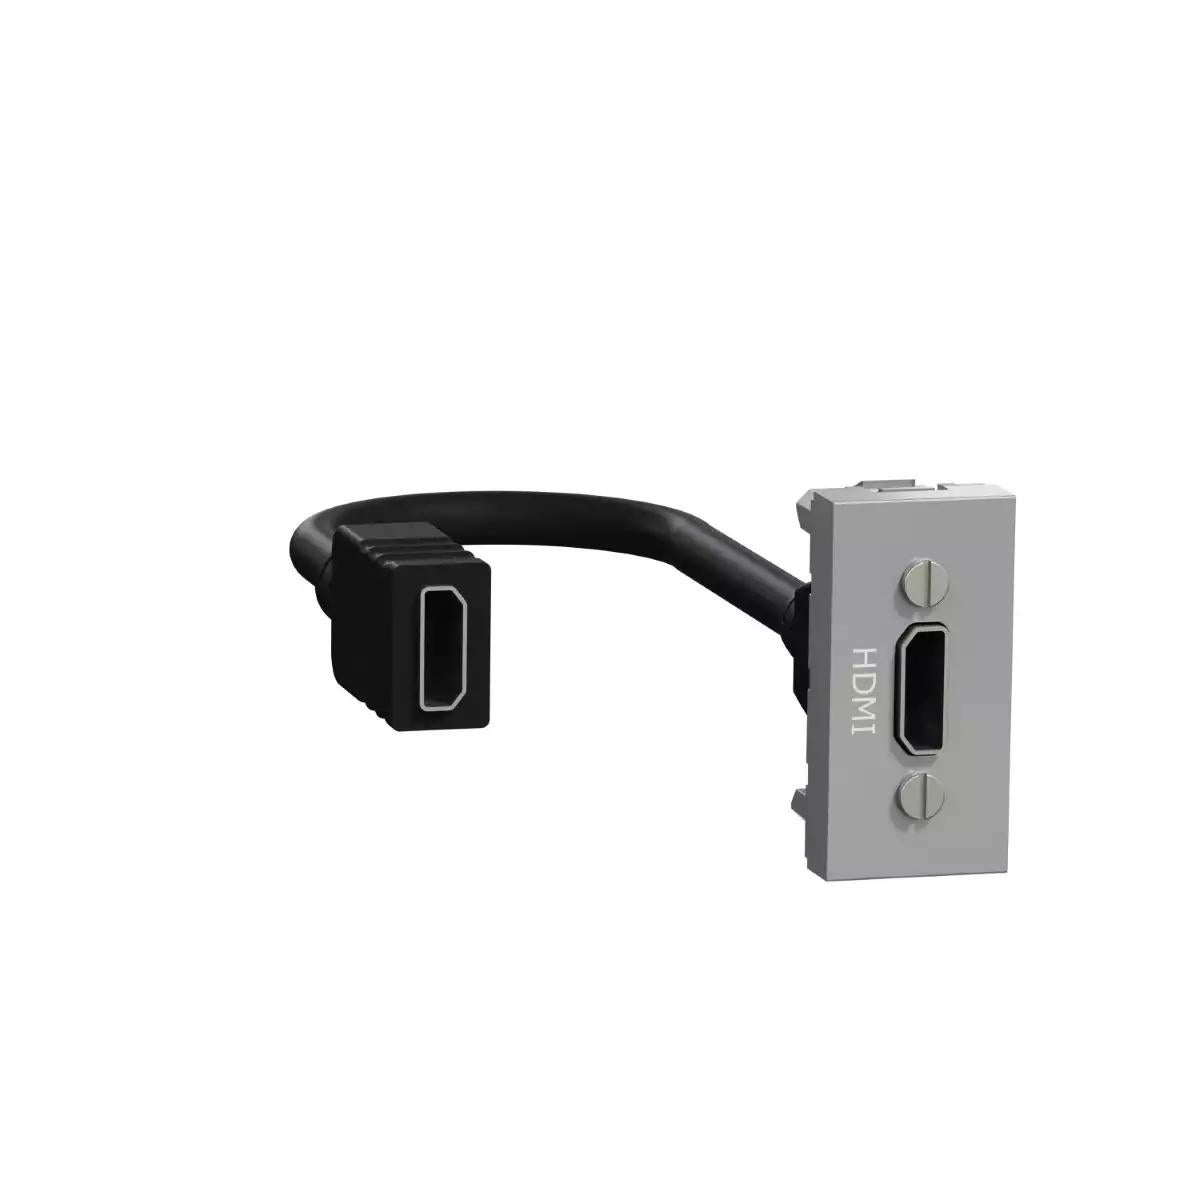 New Unica - HDMI connector prewired - 1 module - aluminium